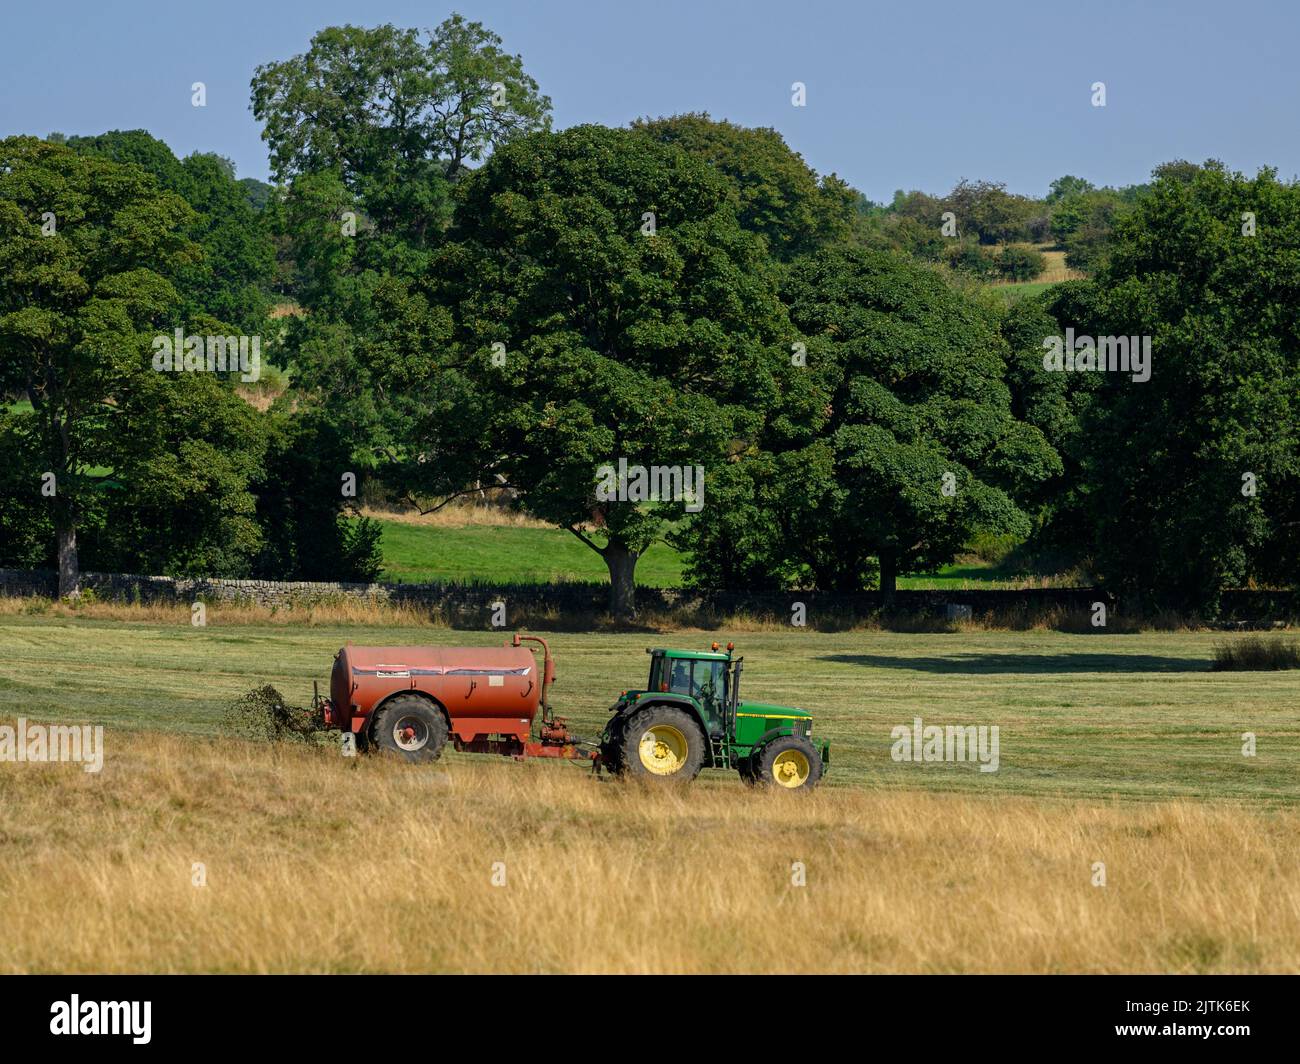 Agriculteur travaillant à la conduite d'un tracteur et d'un réservoir d'engrais cylindrique pulvérisant du lisier sur des pâturages de campagne - Yorkshire, Angleterre, Royaume-Uni Banque D'Images